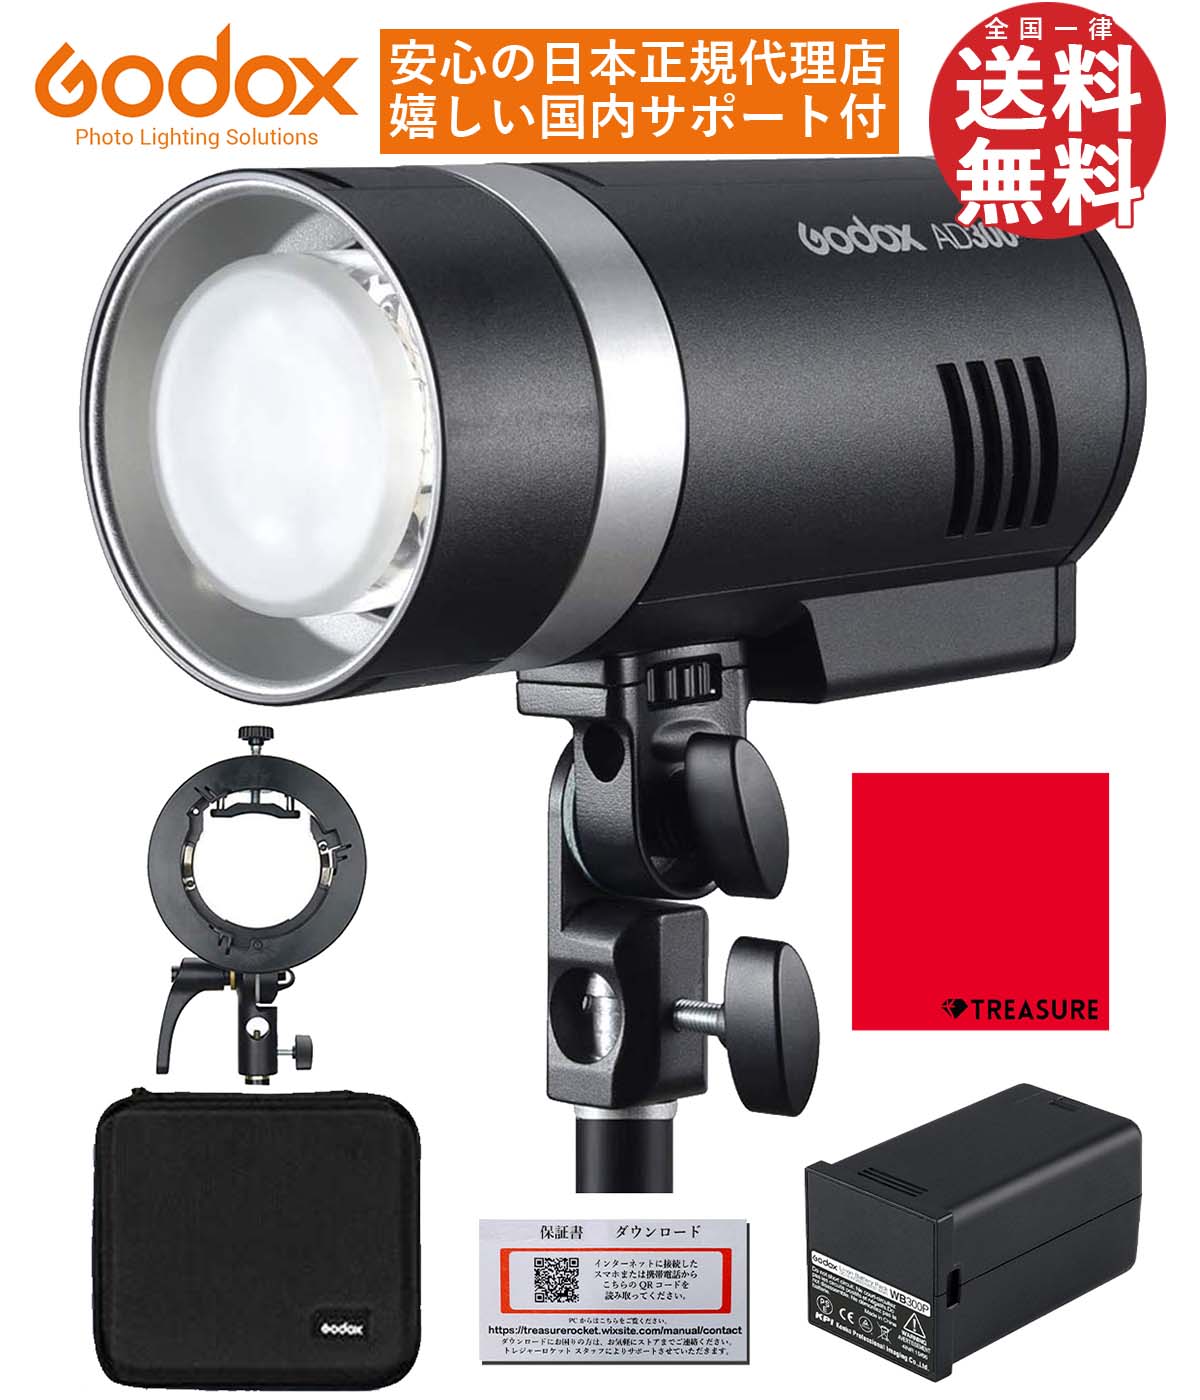 [国内正規代理店] Godox AD300Pro 300W 3000-6000K LEDモデリングランプ 1/8000 HSS 2.4G フラッシュ ストロボ ライト [1年保証/日本語説明書/クロス付/セット品] (AD300Pro + S2)